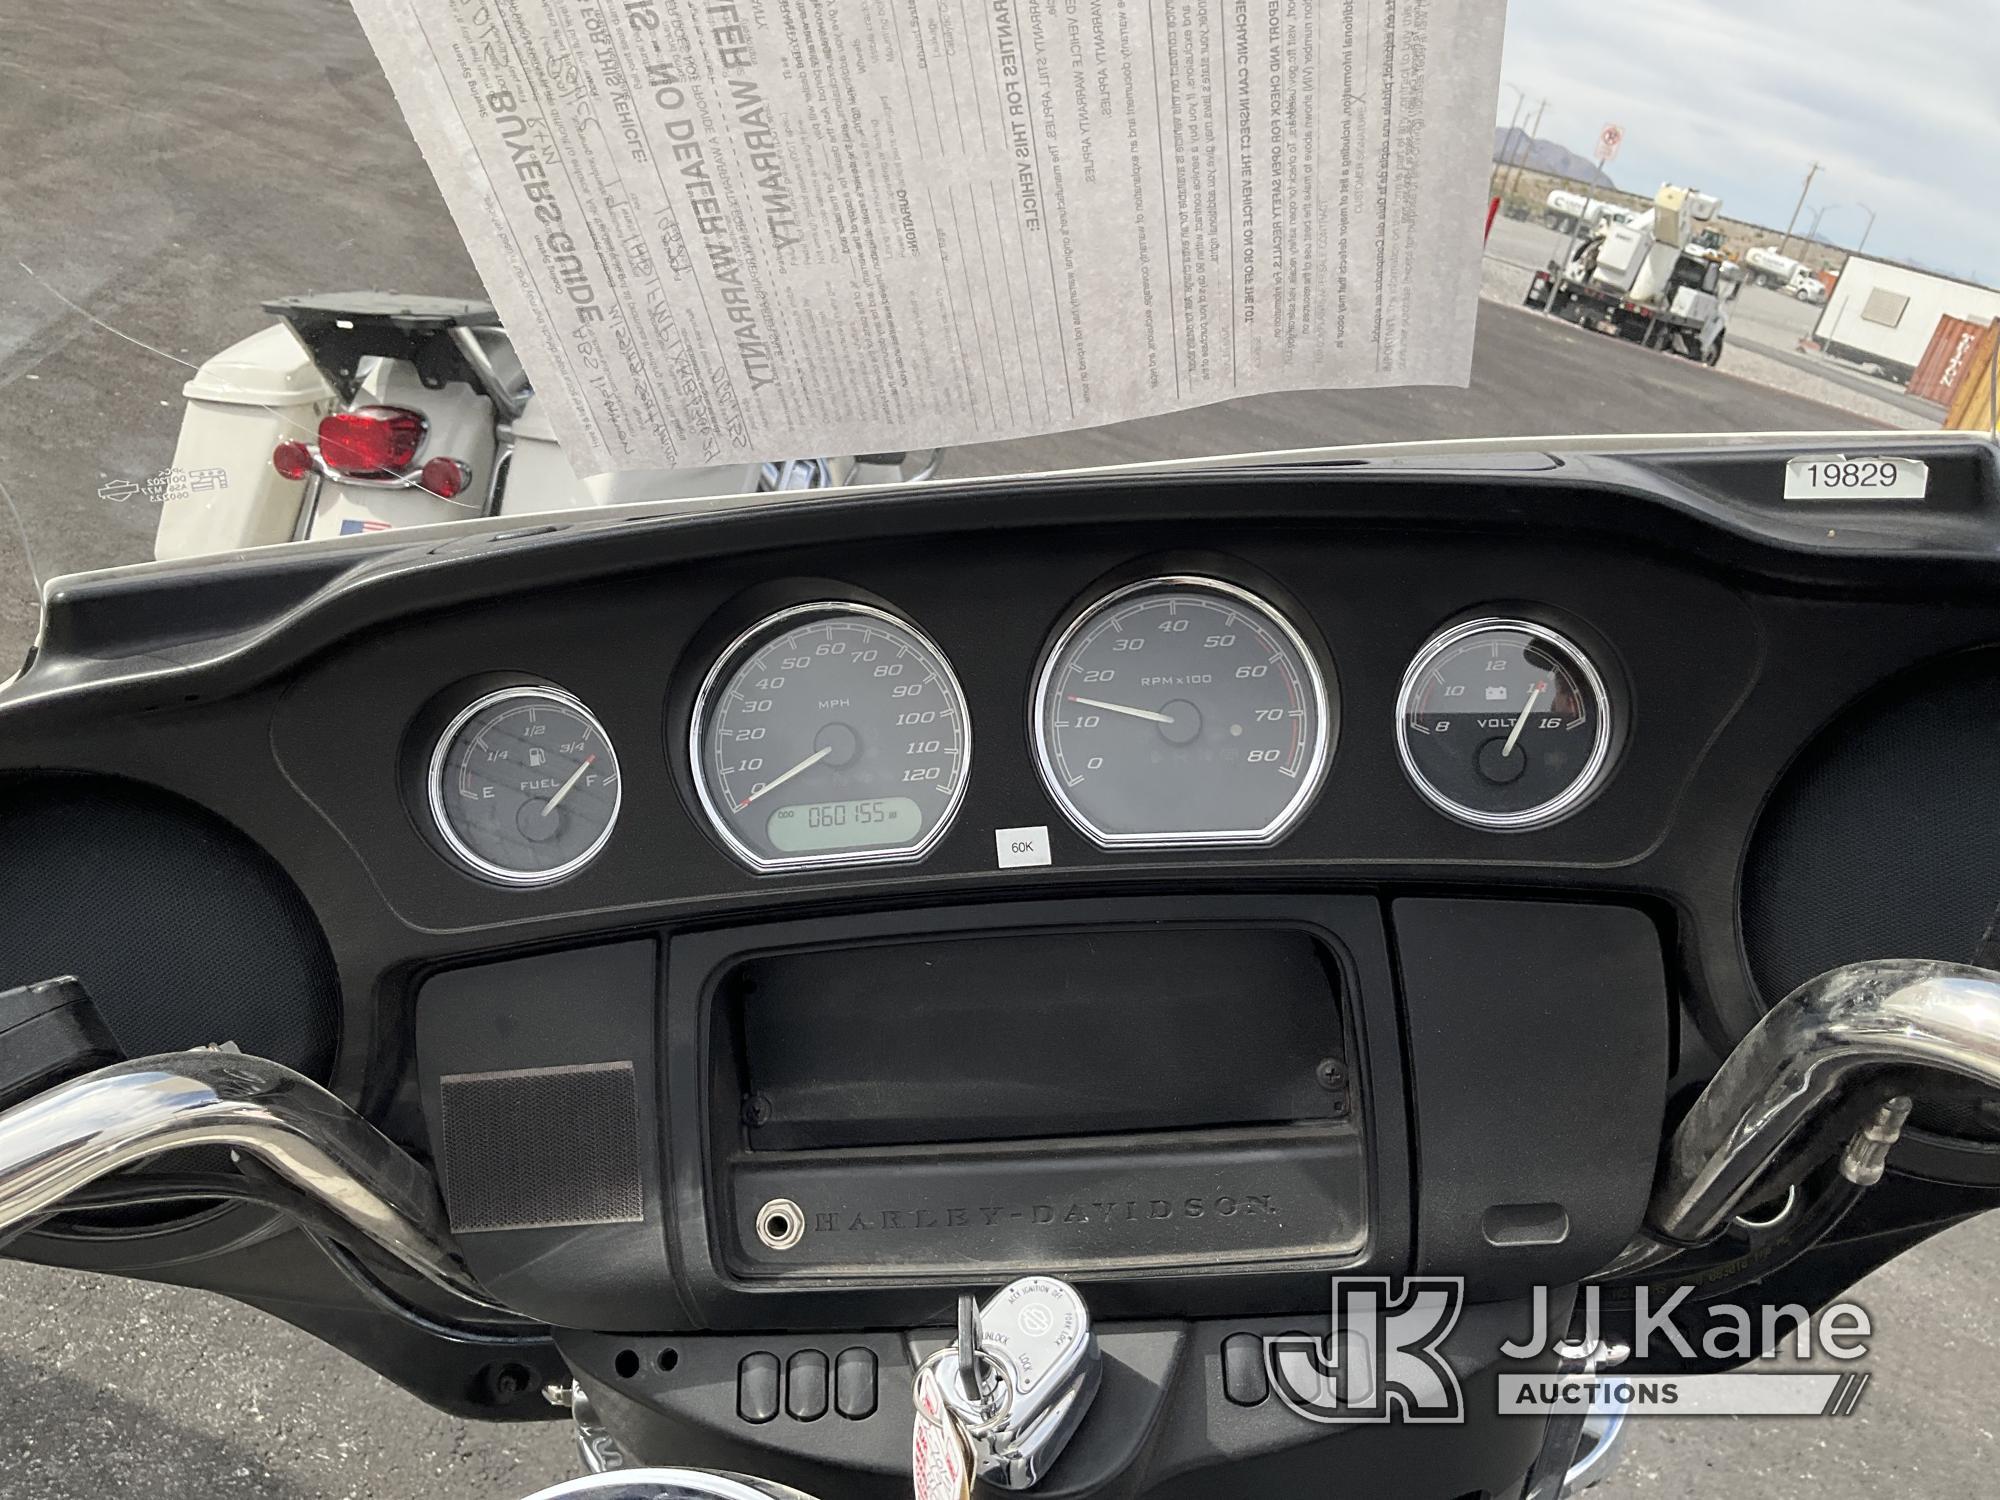 (Las Vegas, NV) 2019 Harley-Davidson FLHTP Police Missing Seat & Mirror Runs & Moves